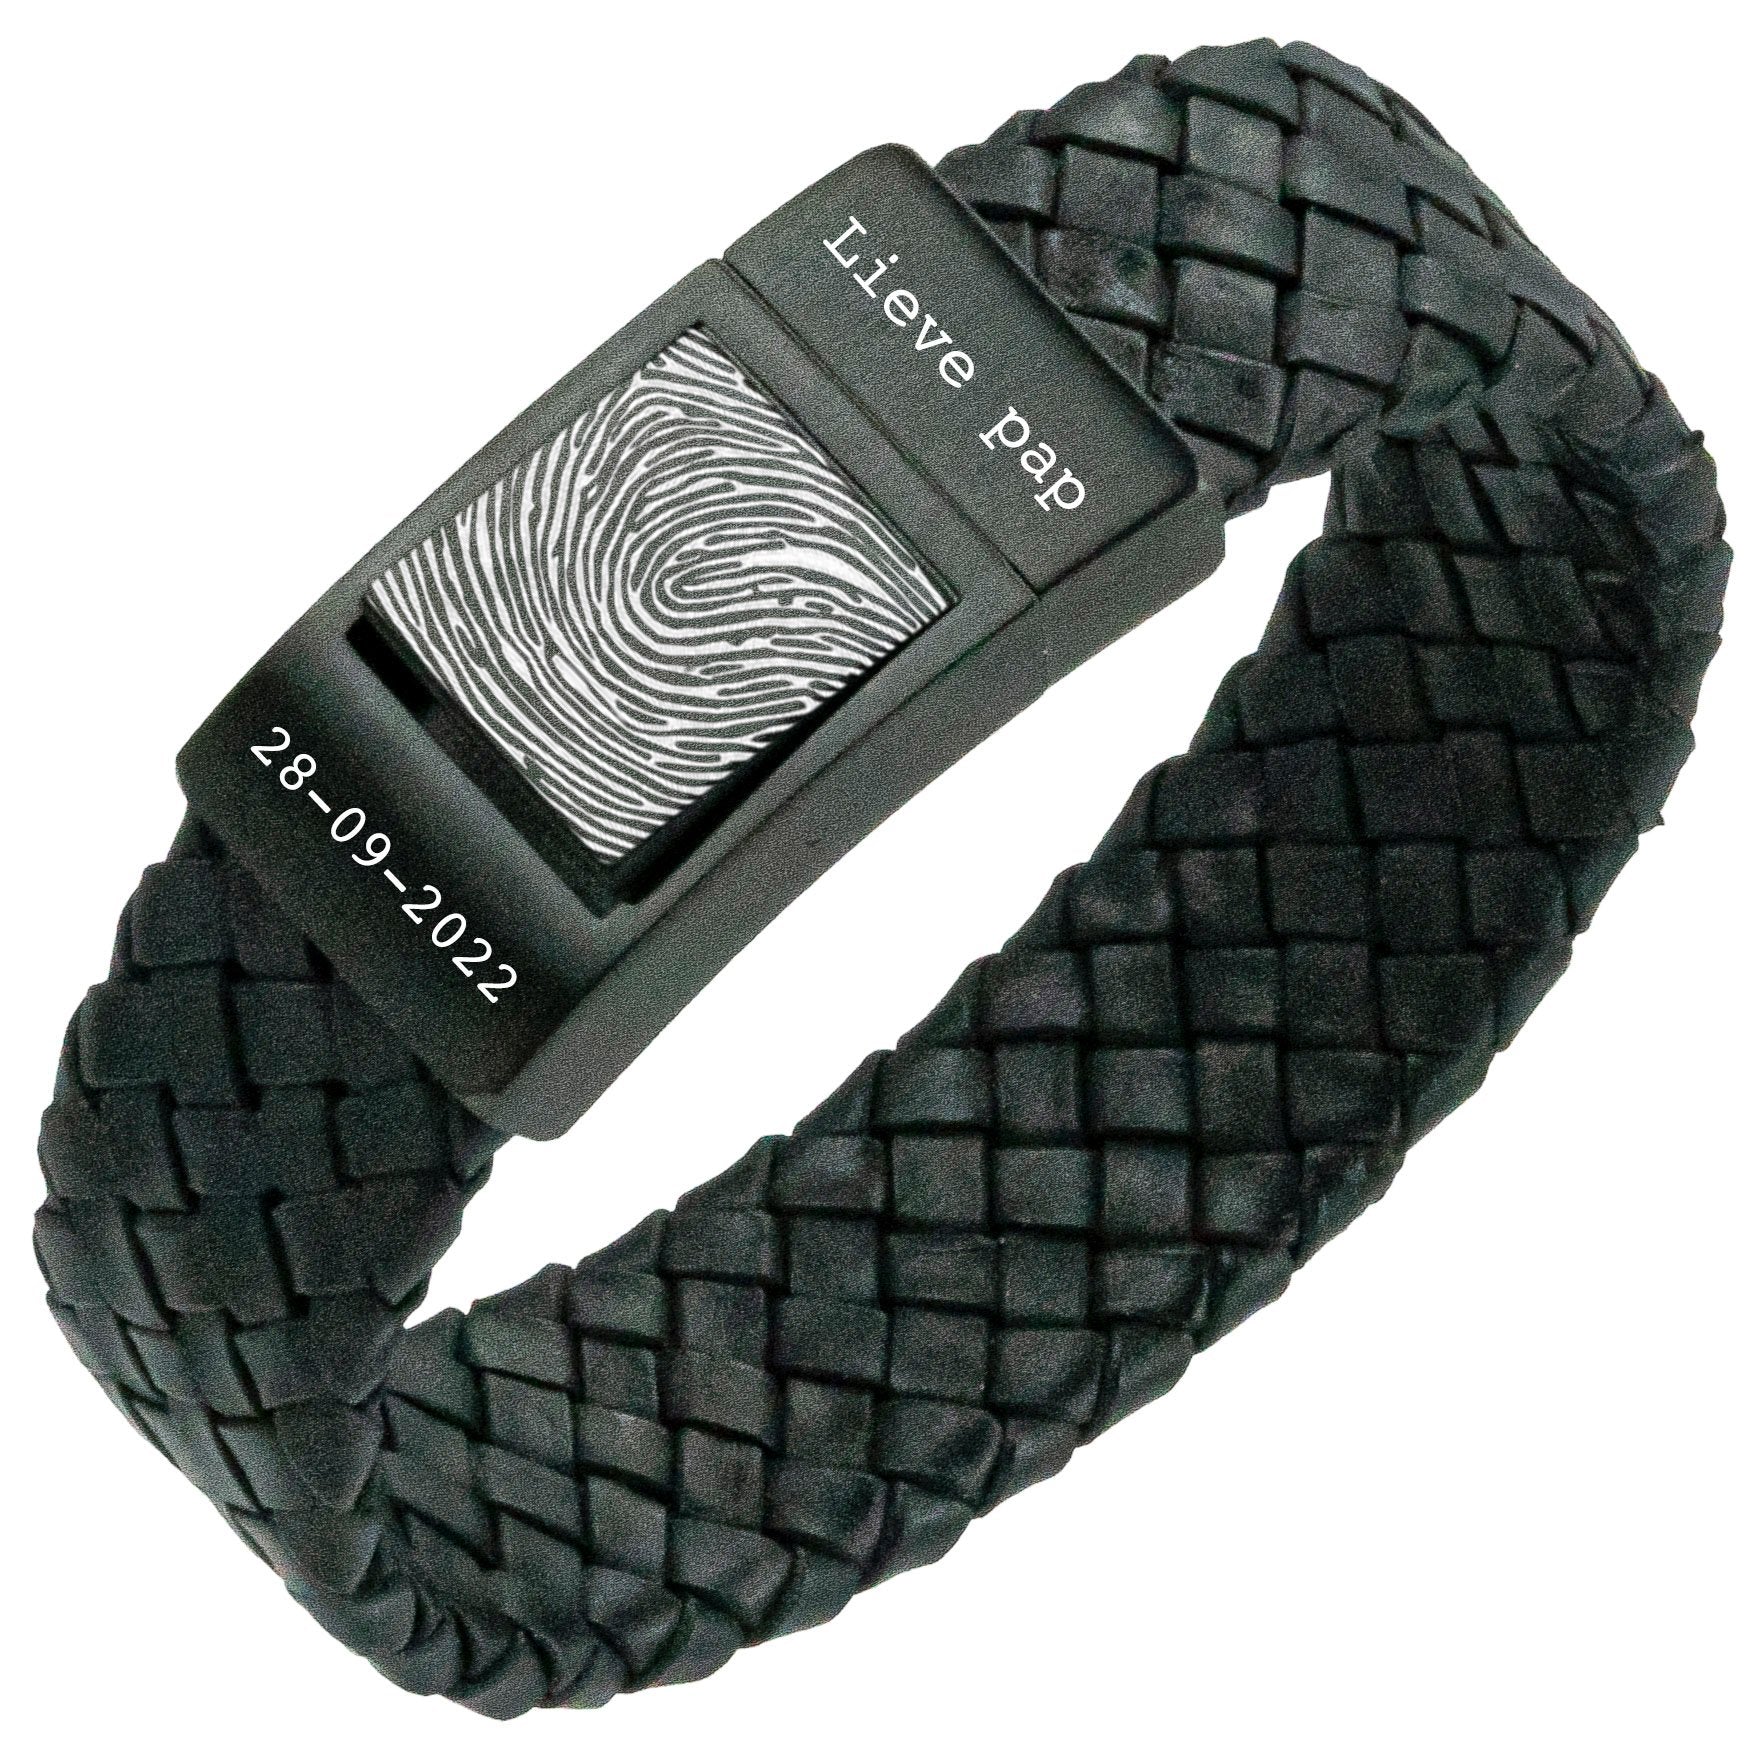 Dad Fingerprint bracelet - Black braided leather